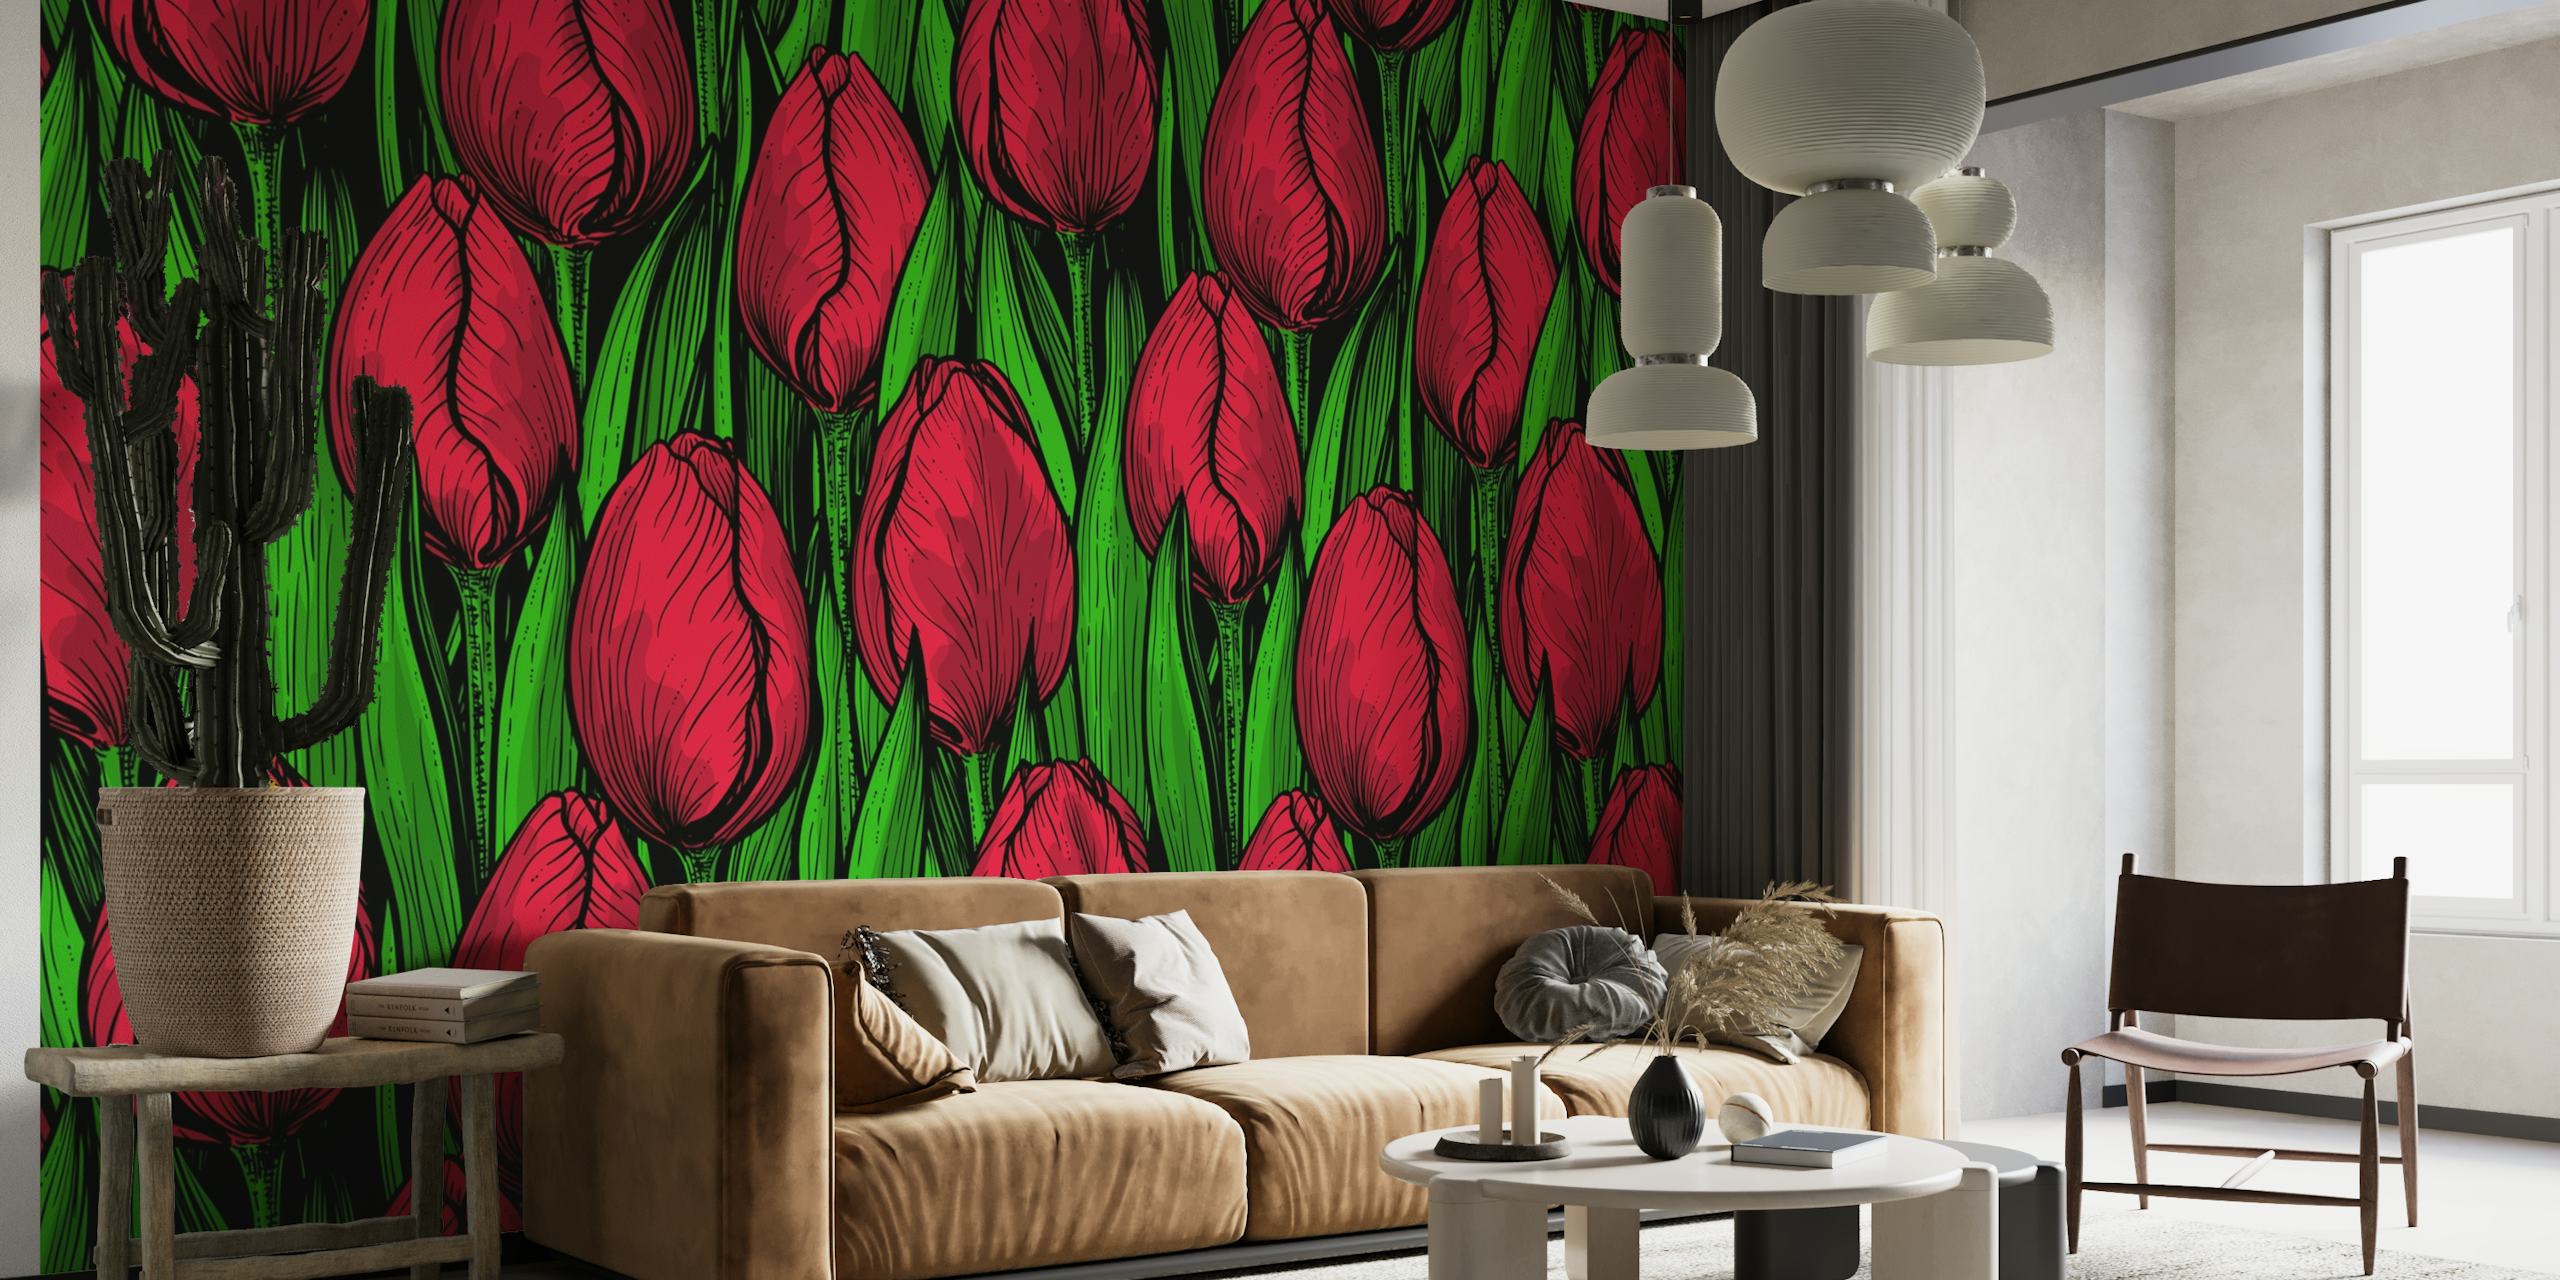 Red tulips behang